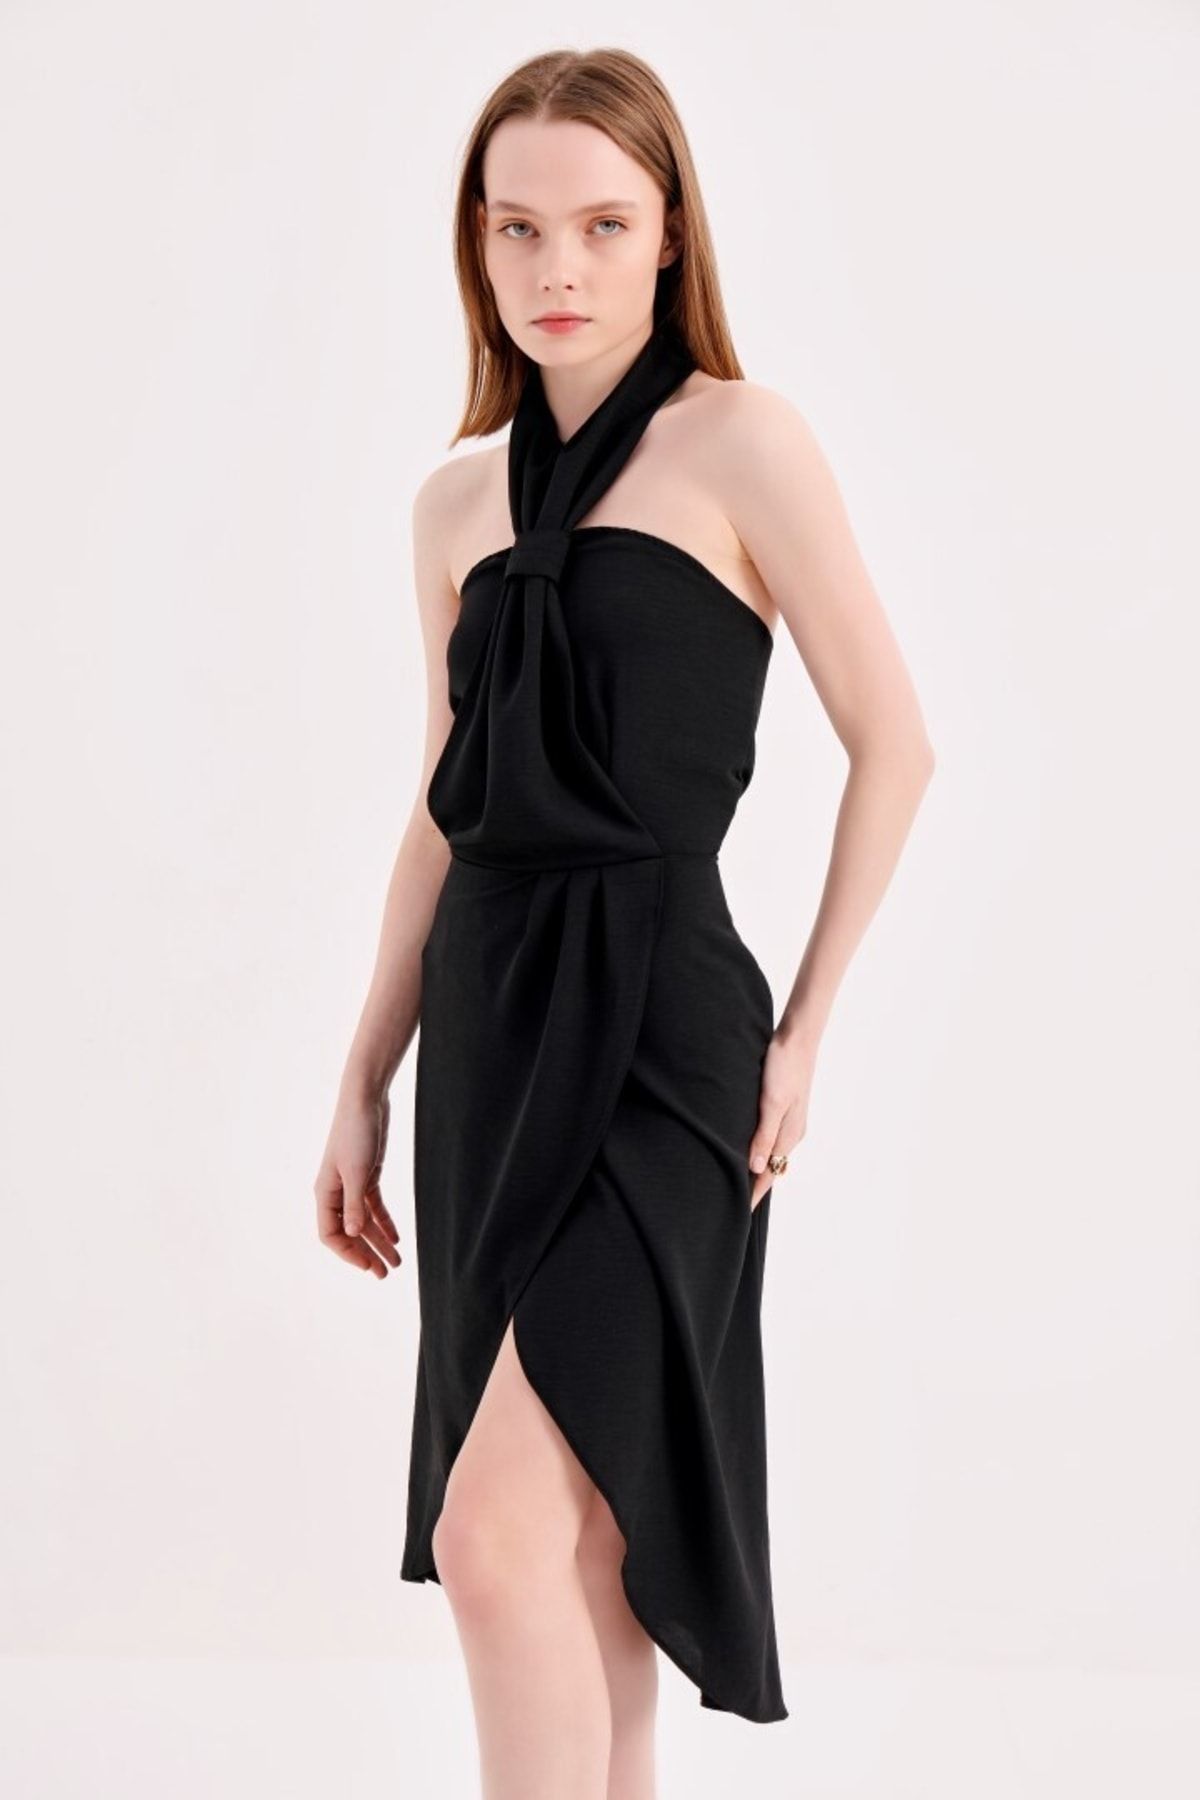 alpira Kadın Elbise -ayrobin Kumaş- Boyundan Bağlamalı Kravat Yaka - Kolsuz Tasarım Elbise M0014s